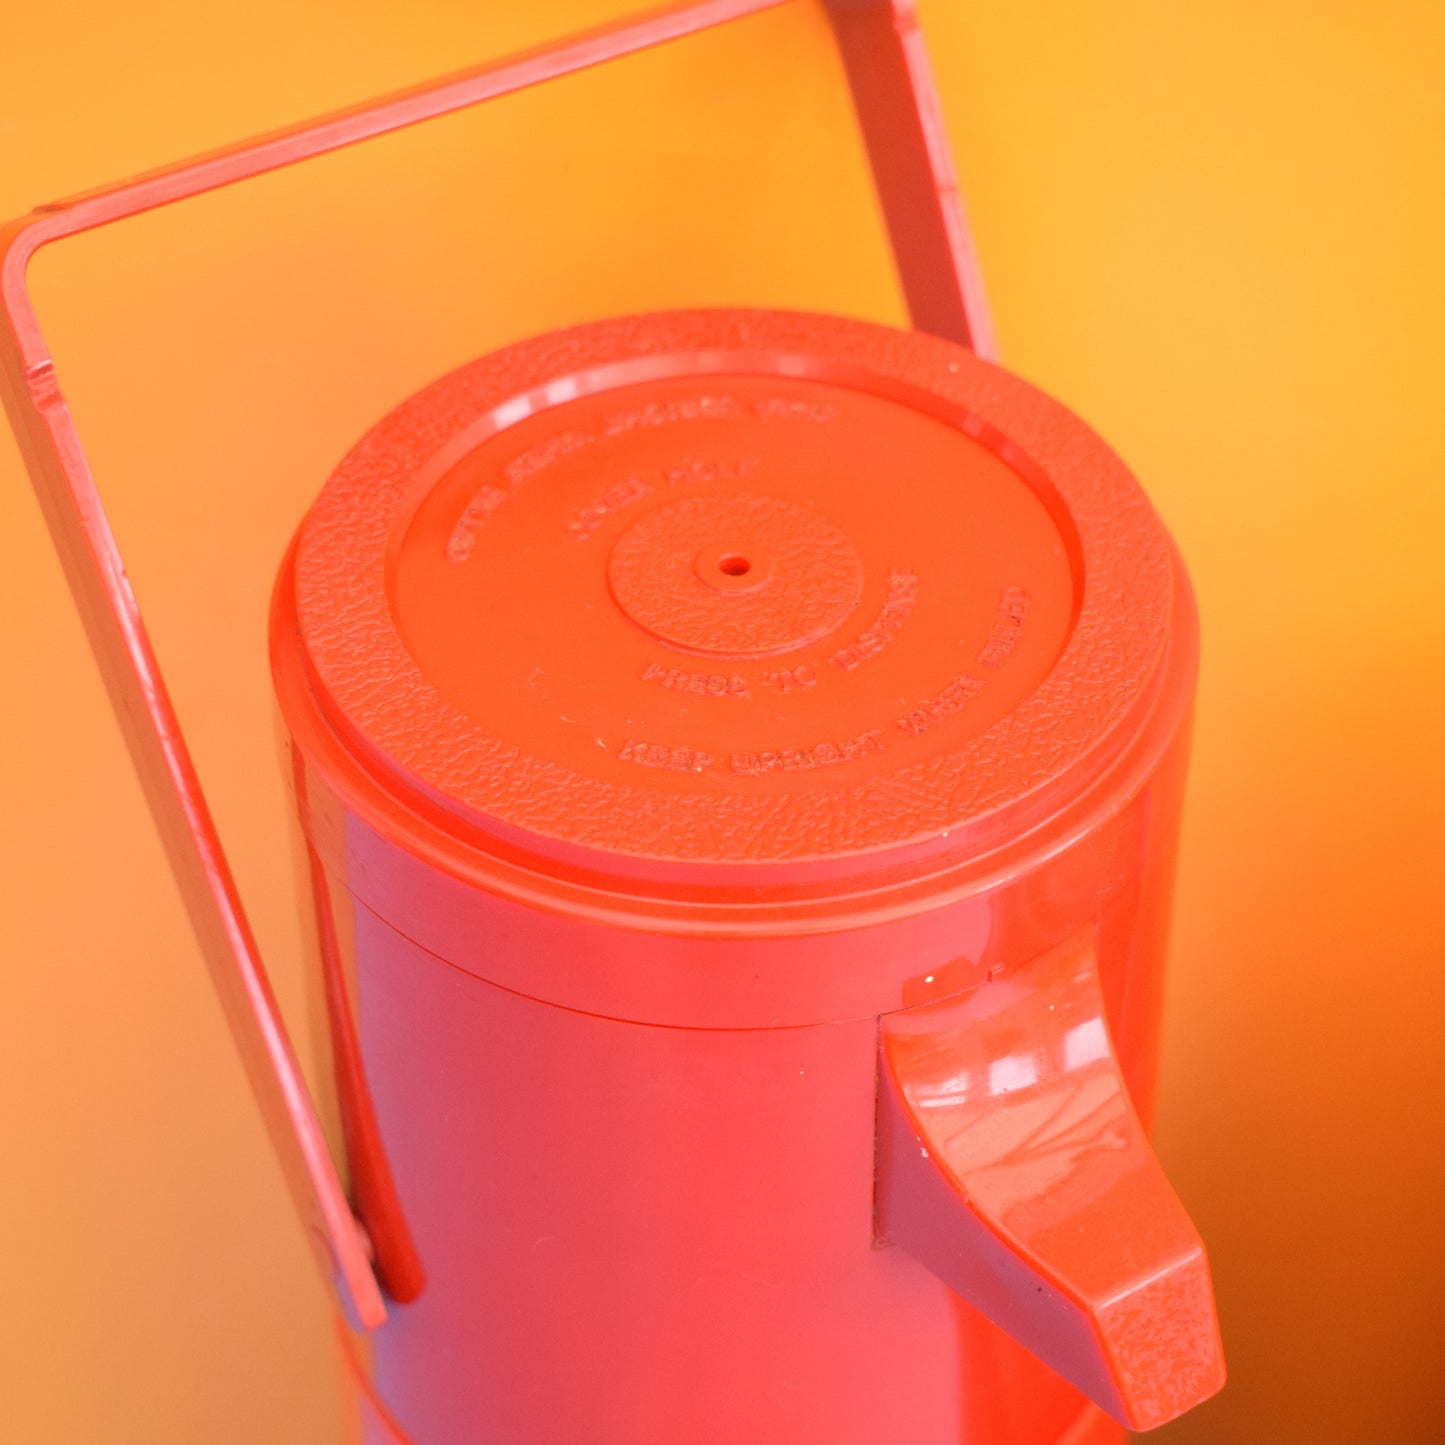 Vintage 1980s Air Pump Flask - Orange